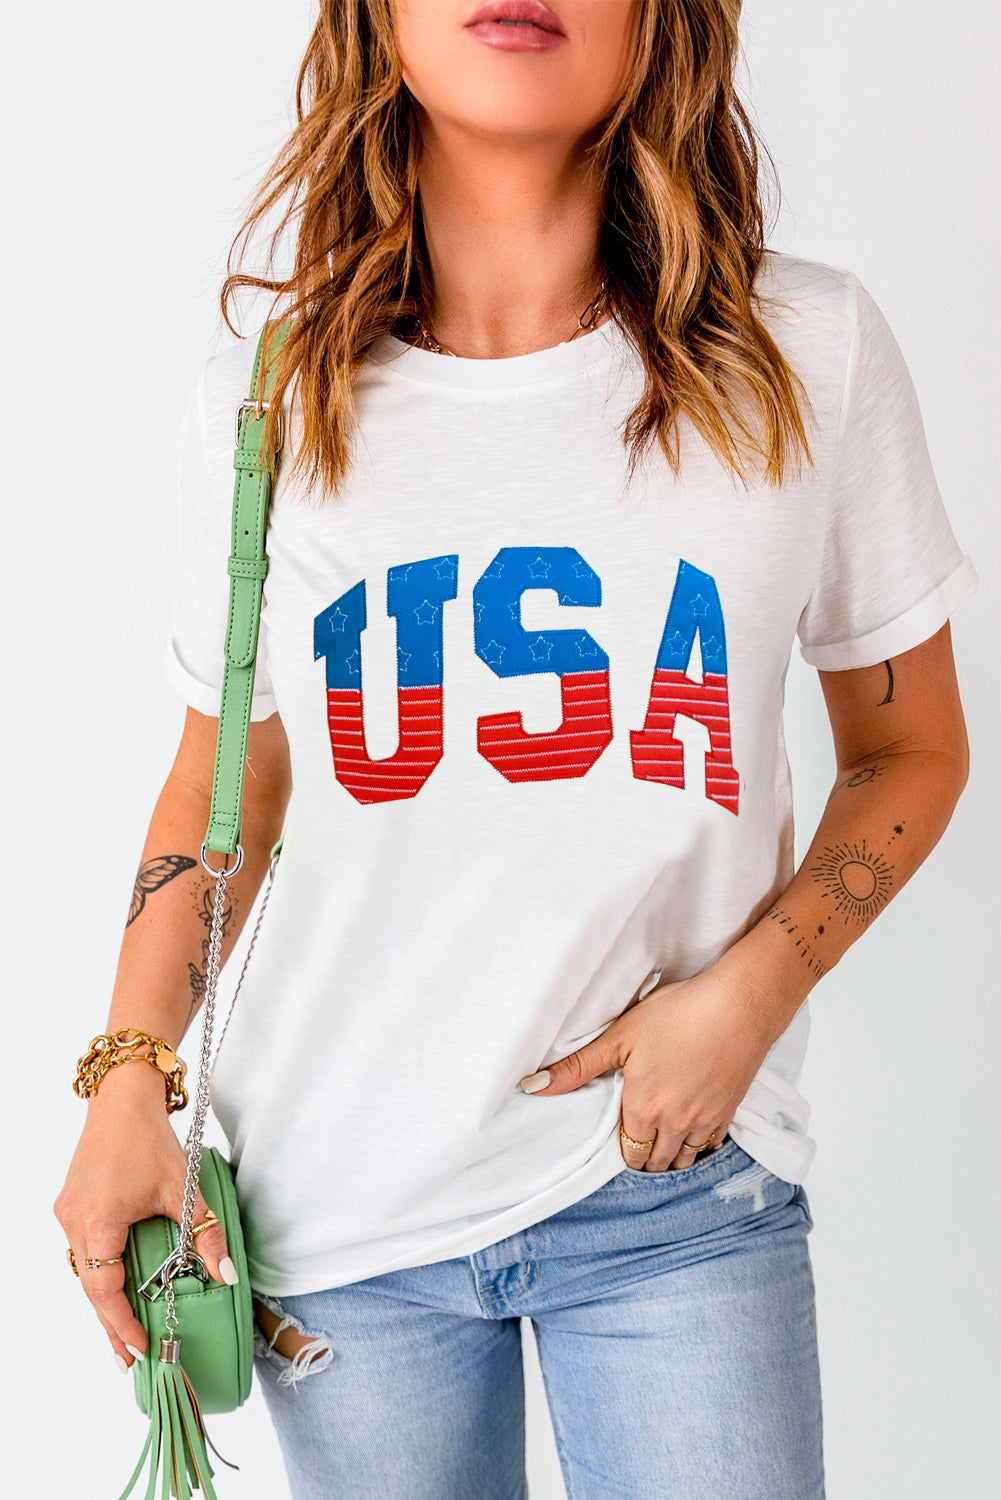 USA Round Neck Short Sleeve T-Shirt - Ryzela